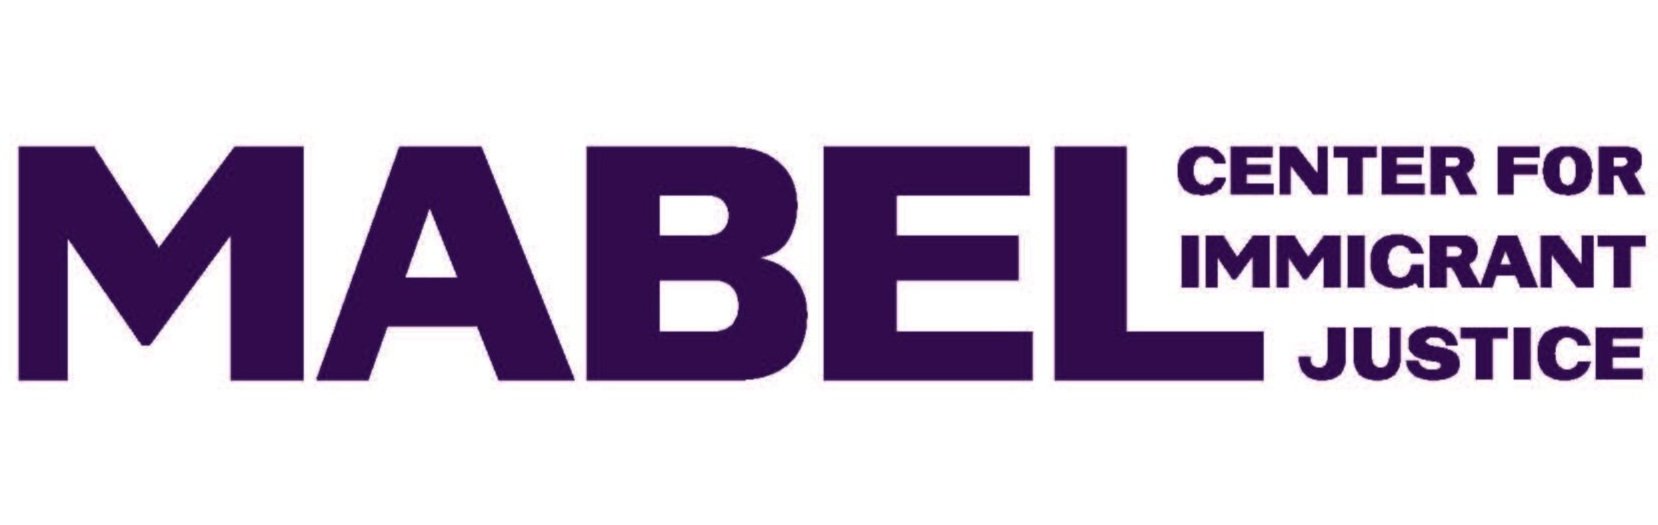 mabel_logo_purple.jpg